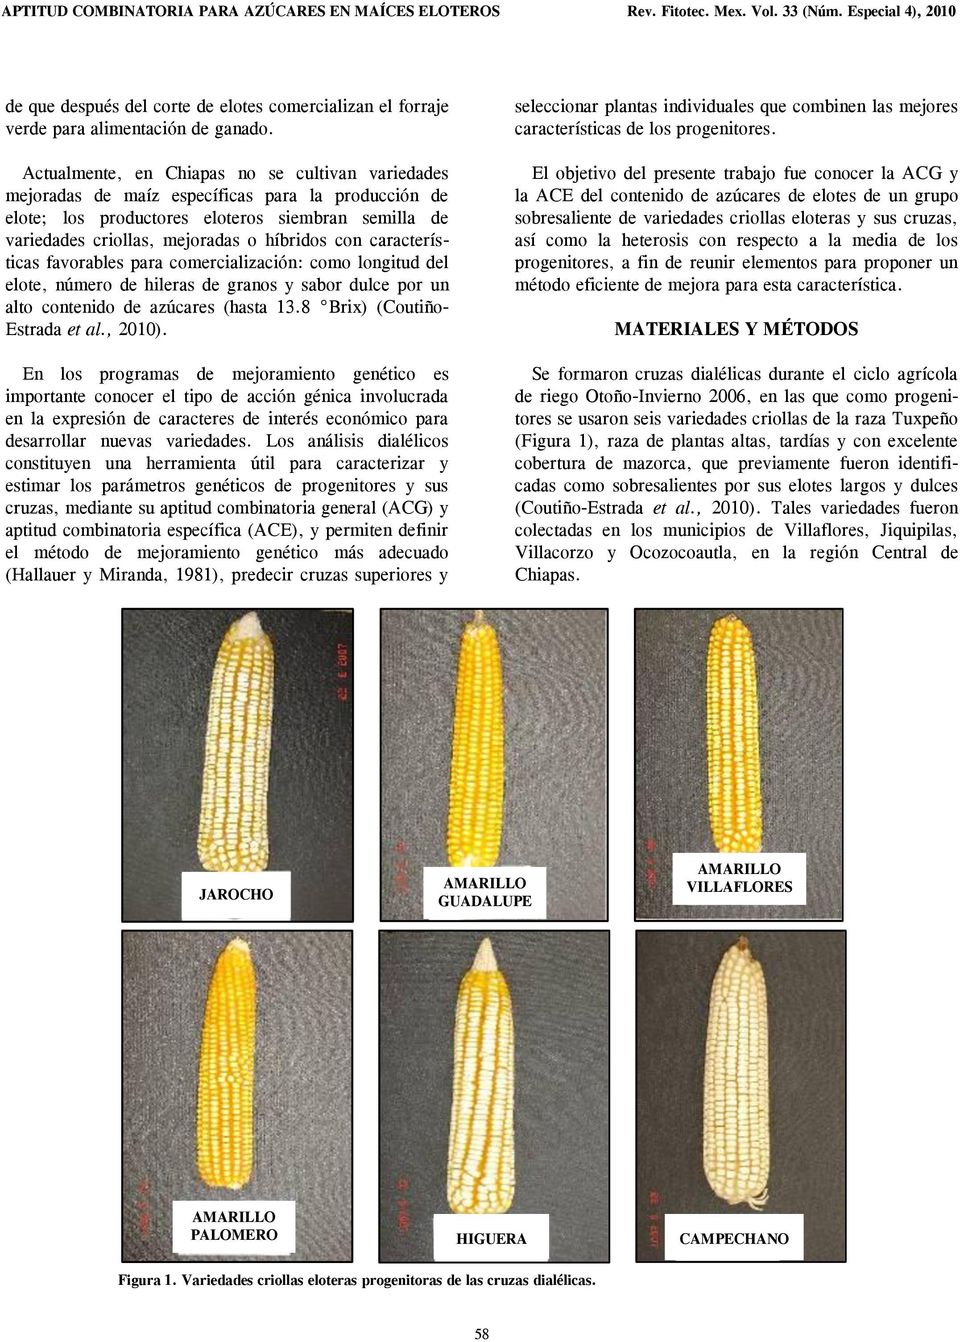 Actualmente, en Chiapas no se cultivan variedades mejoradas de maíz específicas para la producción de elote; los productores eloteros siembran semilla de variedades criollas, mejoradas o híbridos con